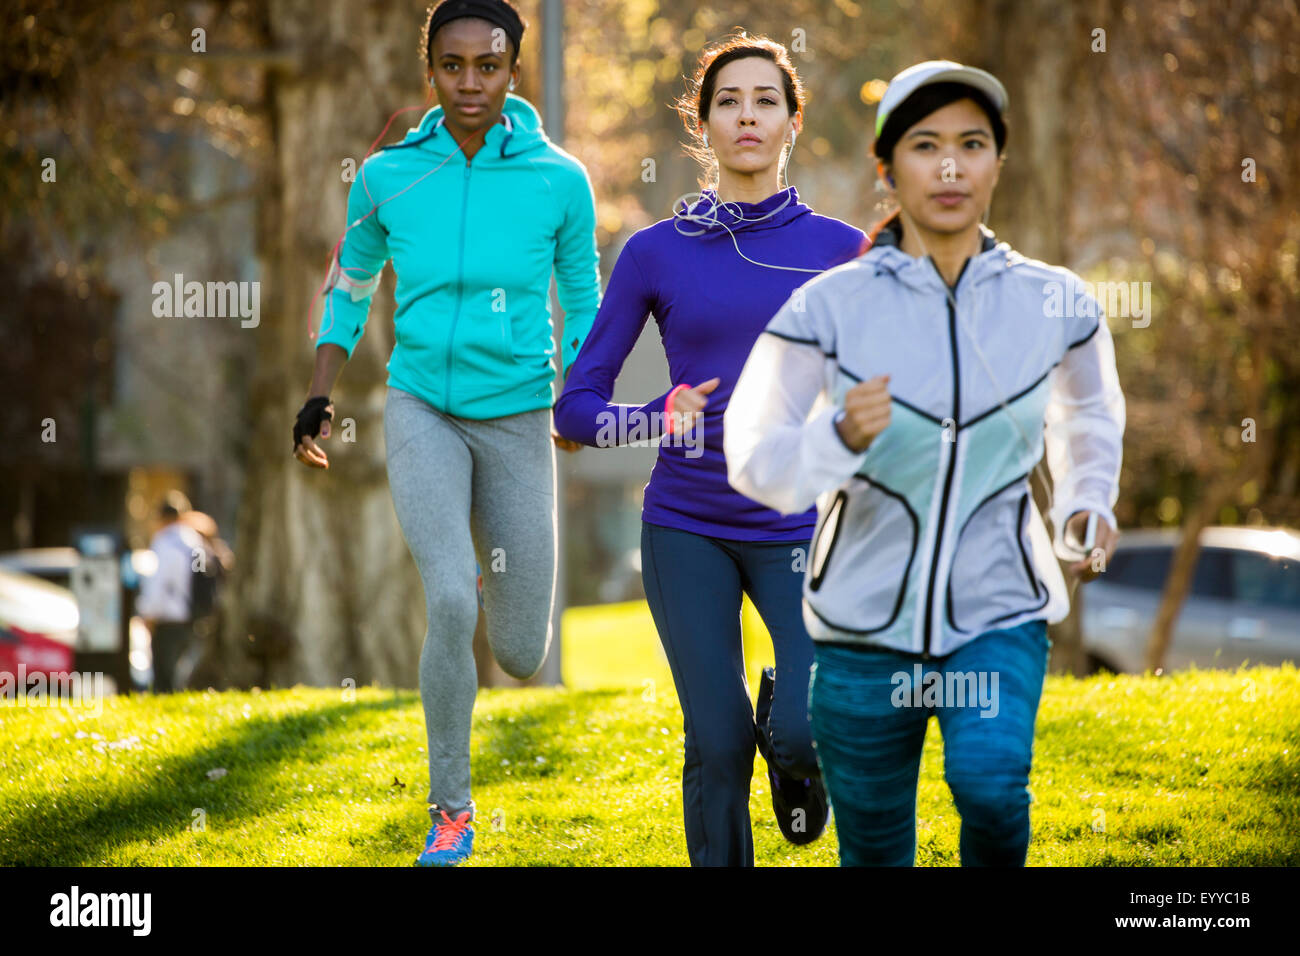 Les femmes running in park Banque D'Images